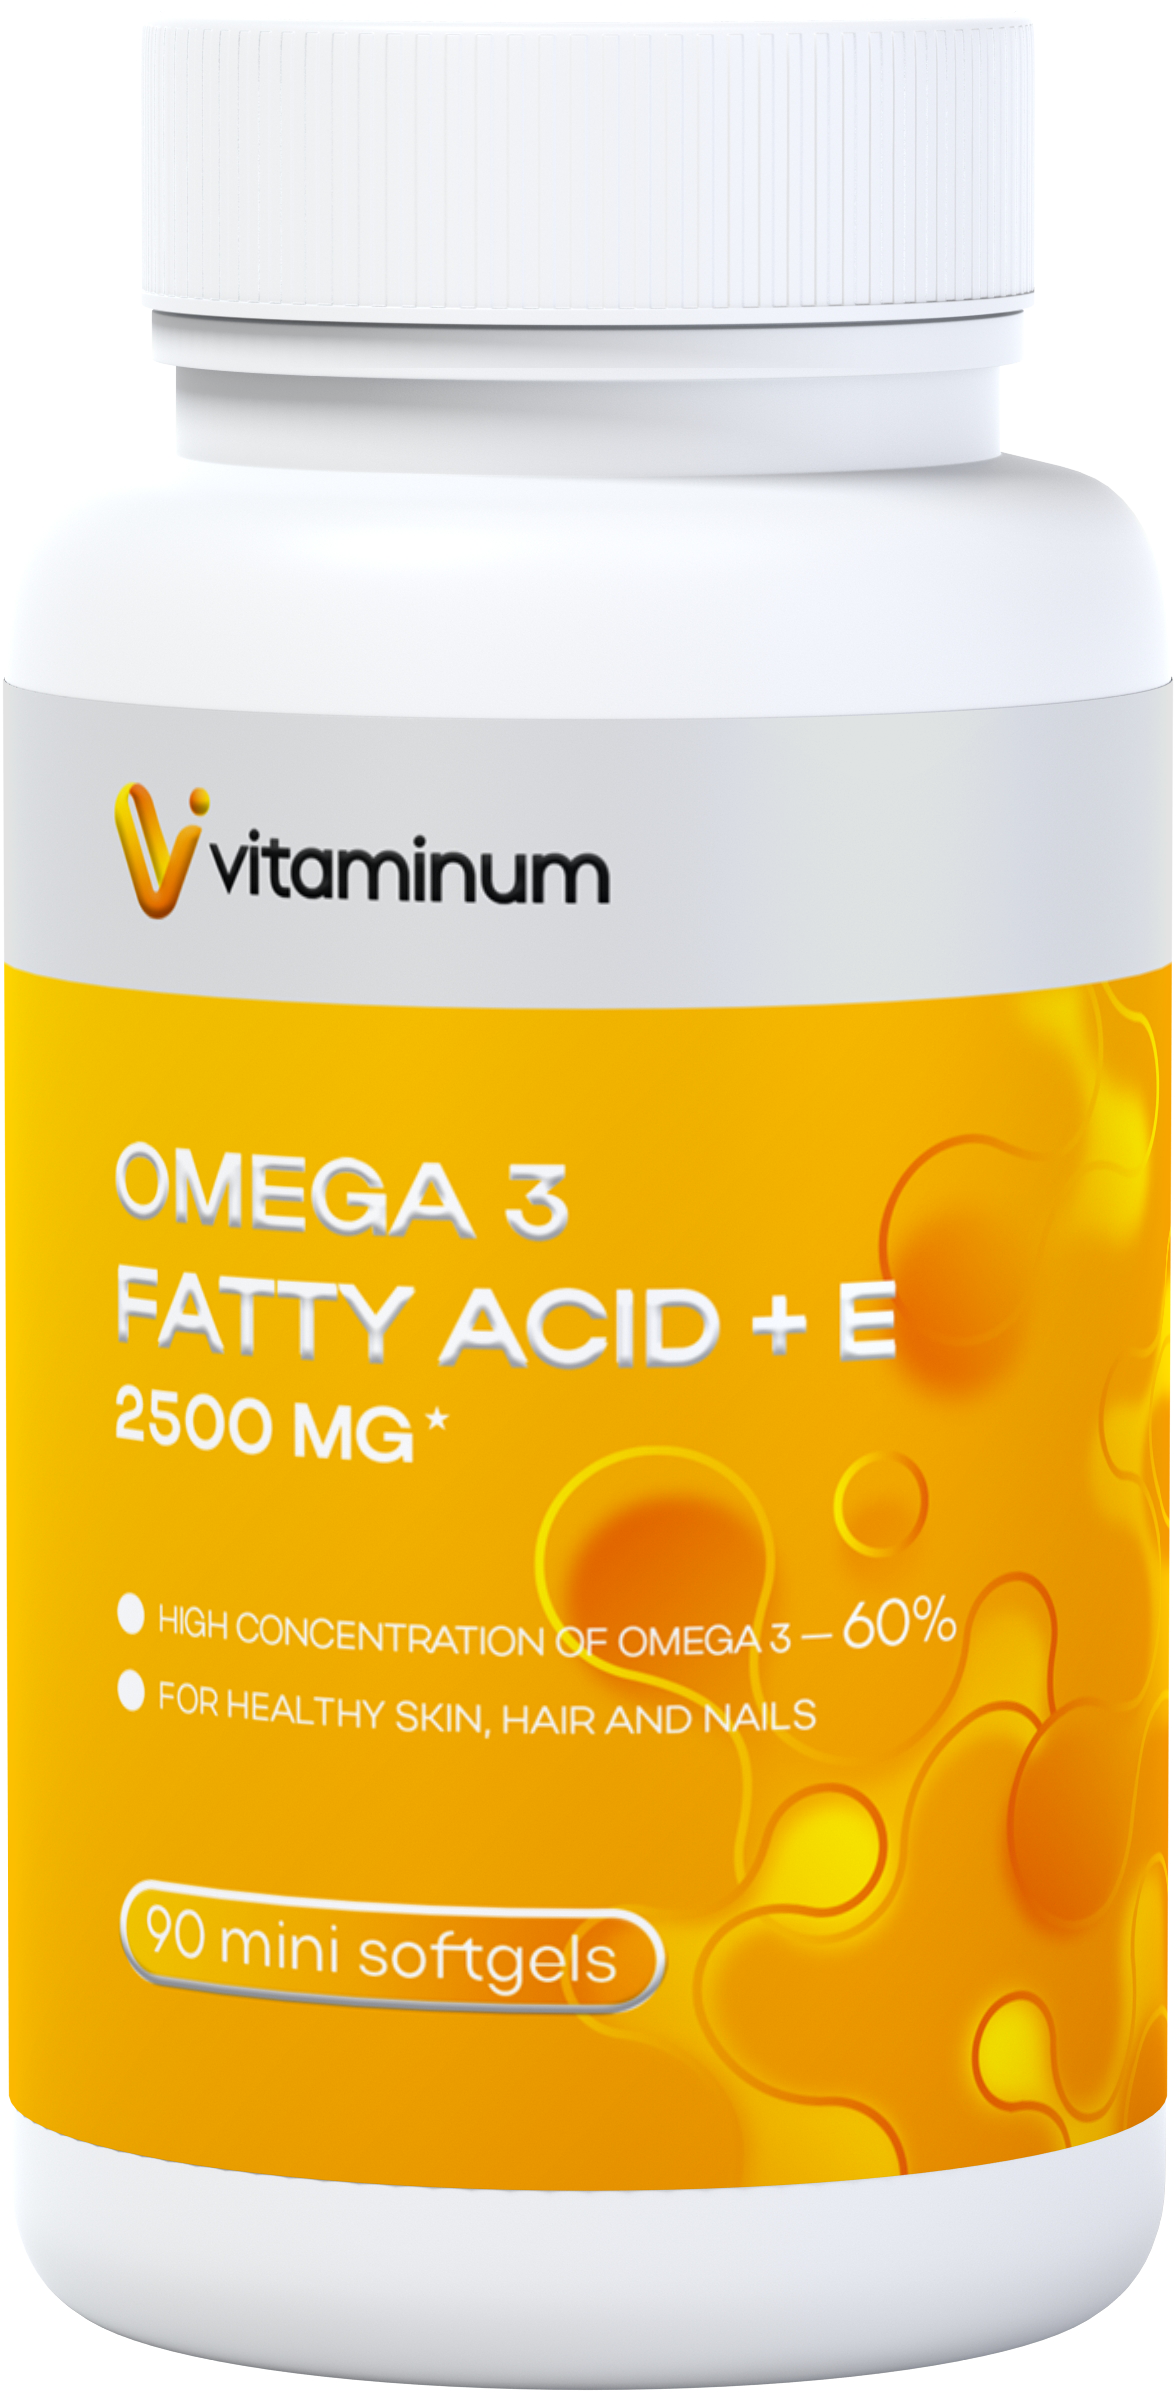  Vitaminum ОМЕГА 3 60% + витамин Е (2500 MG*) 90 капсул 700 мг   в Старой Руссе